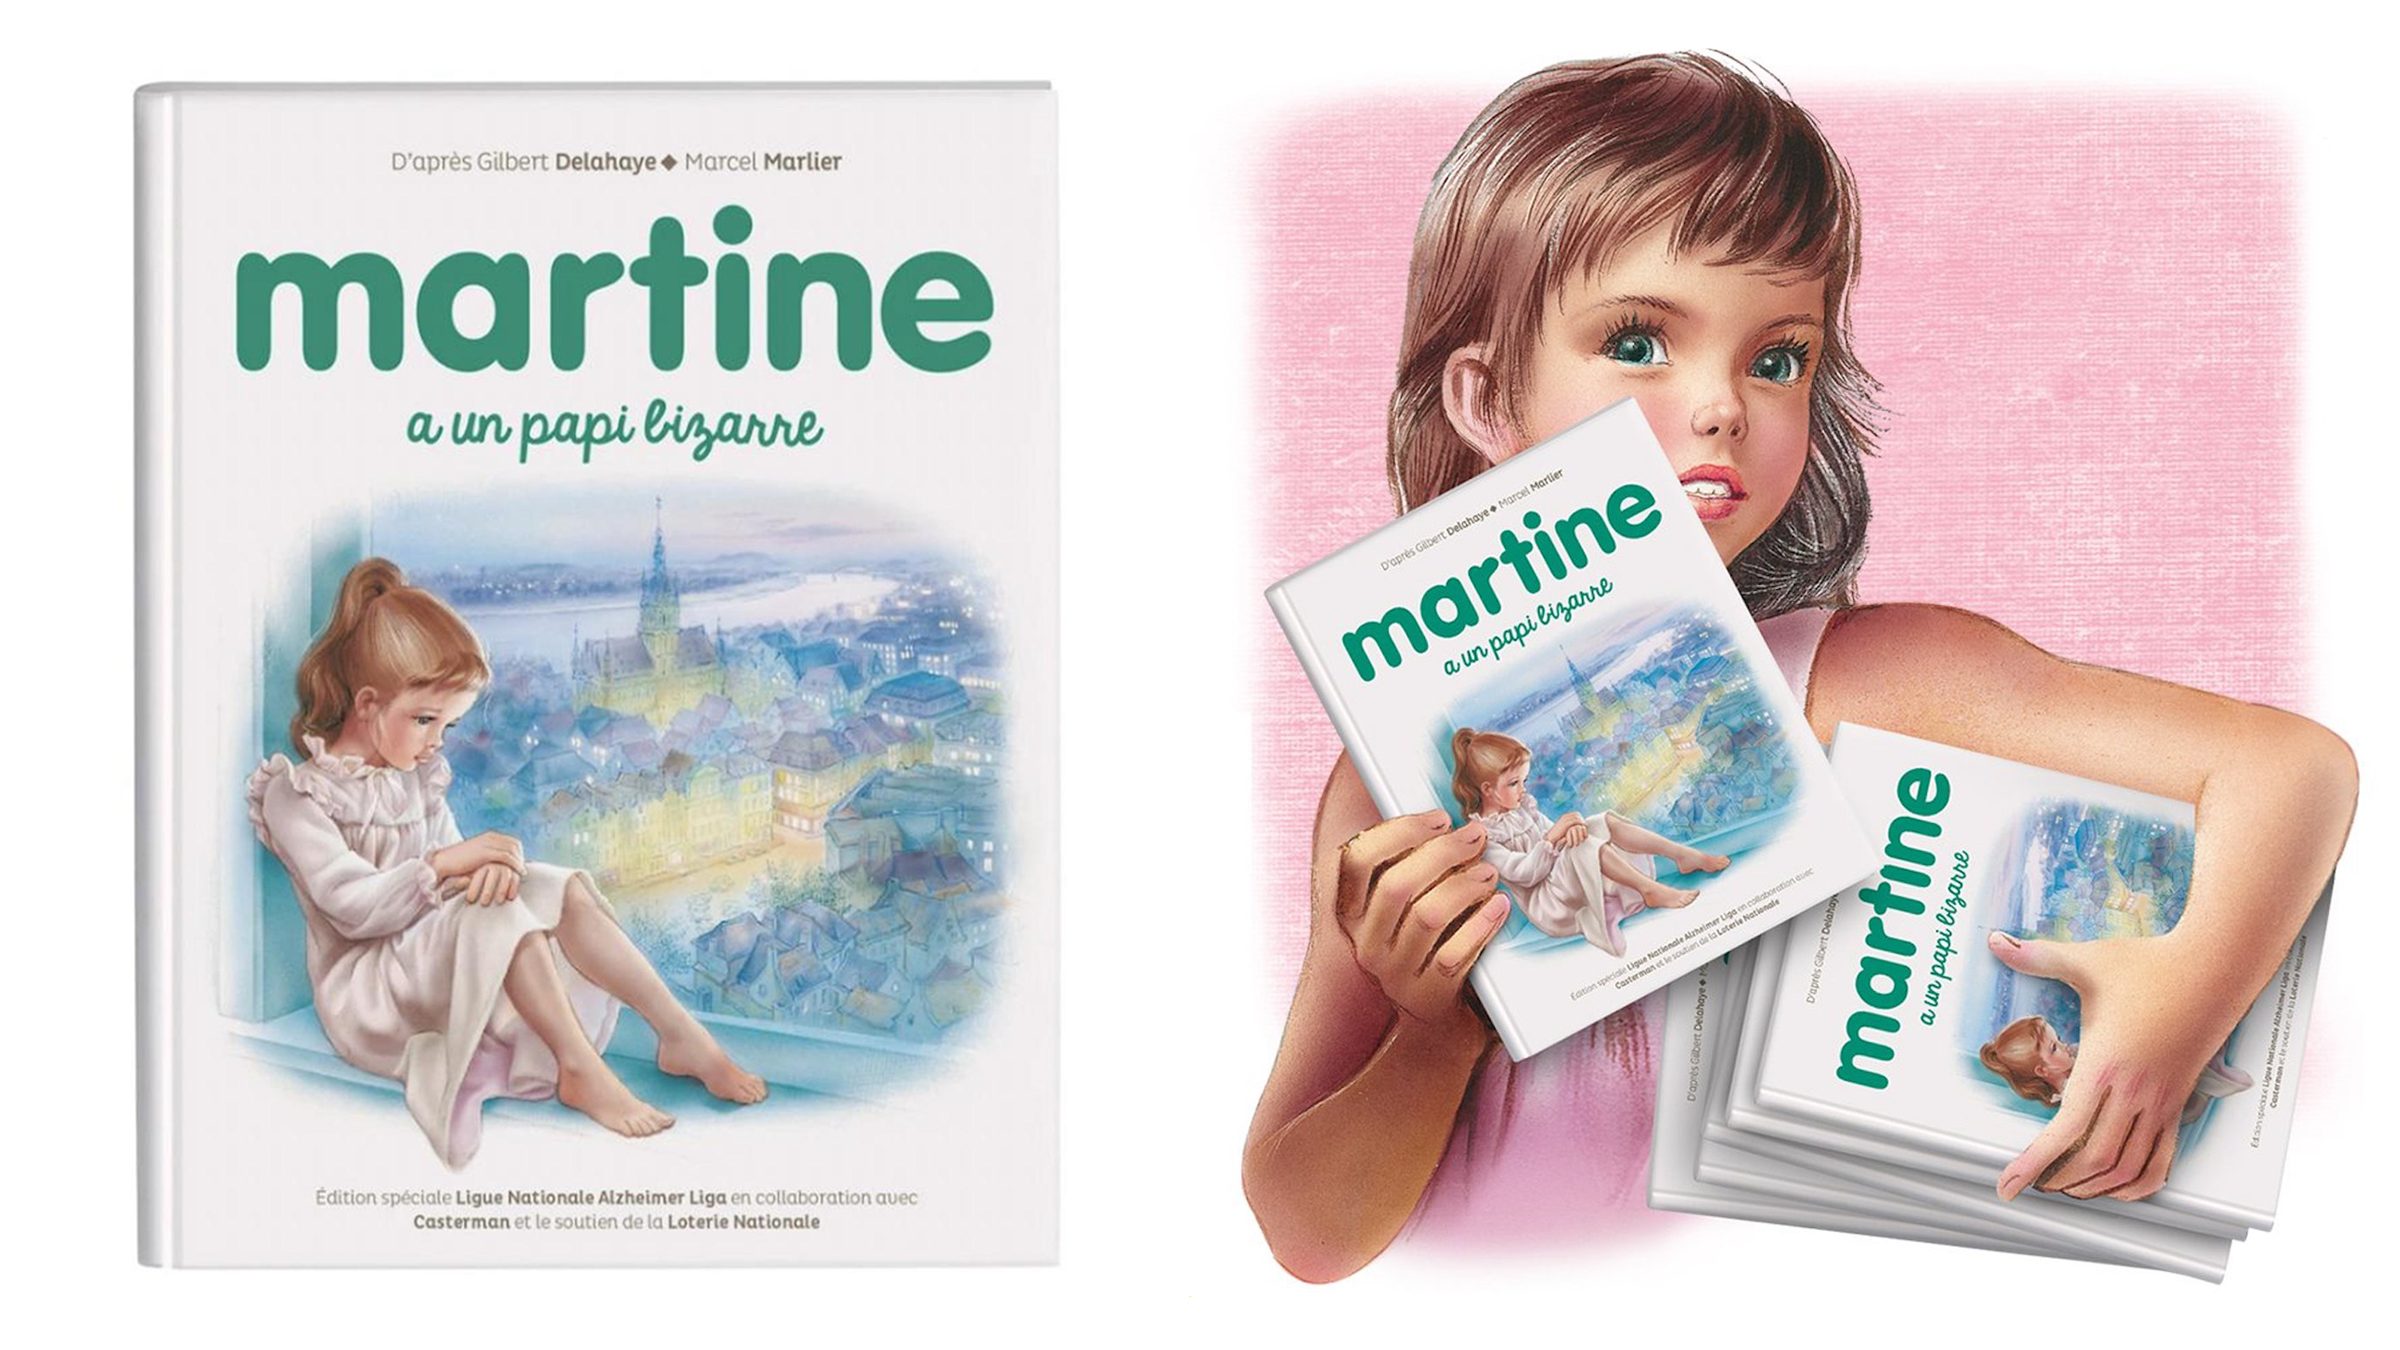 Les albums pour enfants Martine : un personnage réconfortant